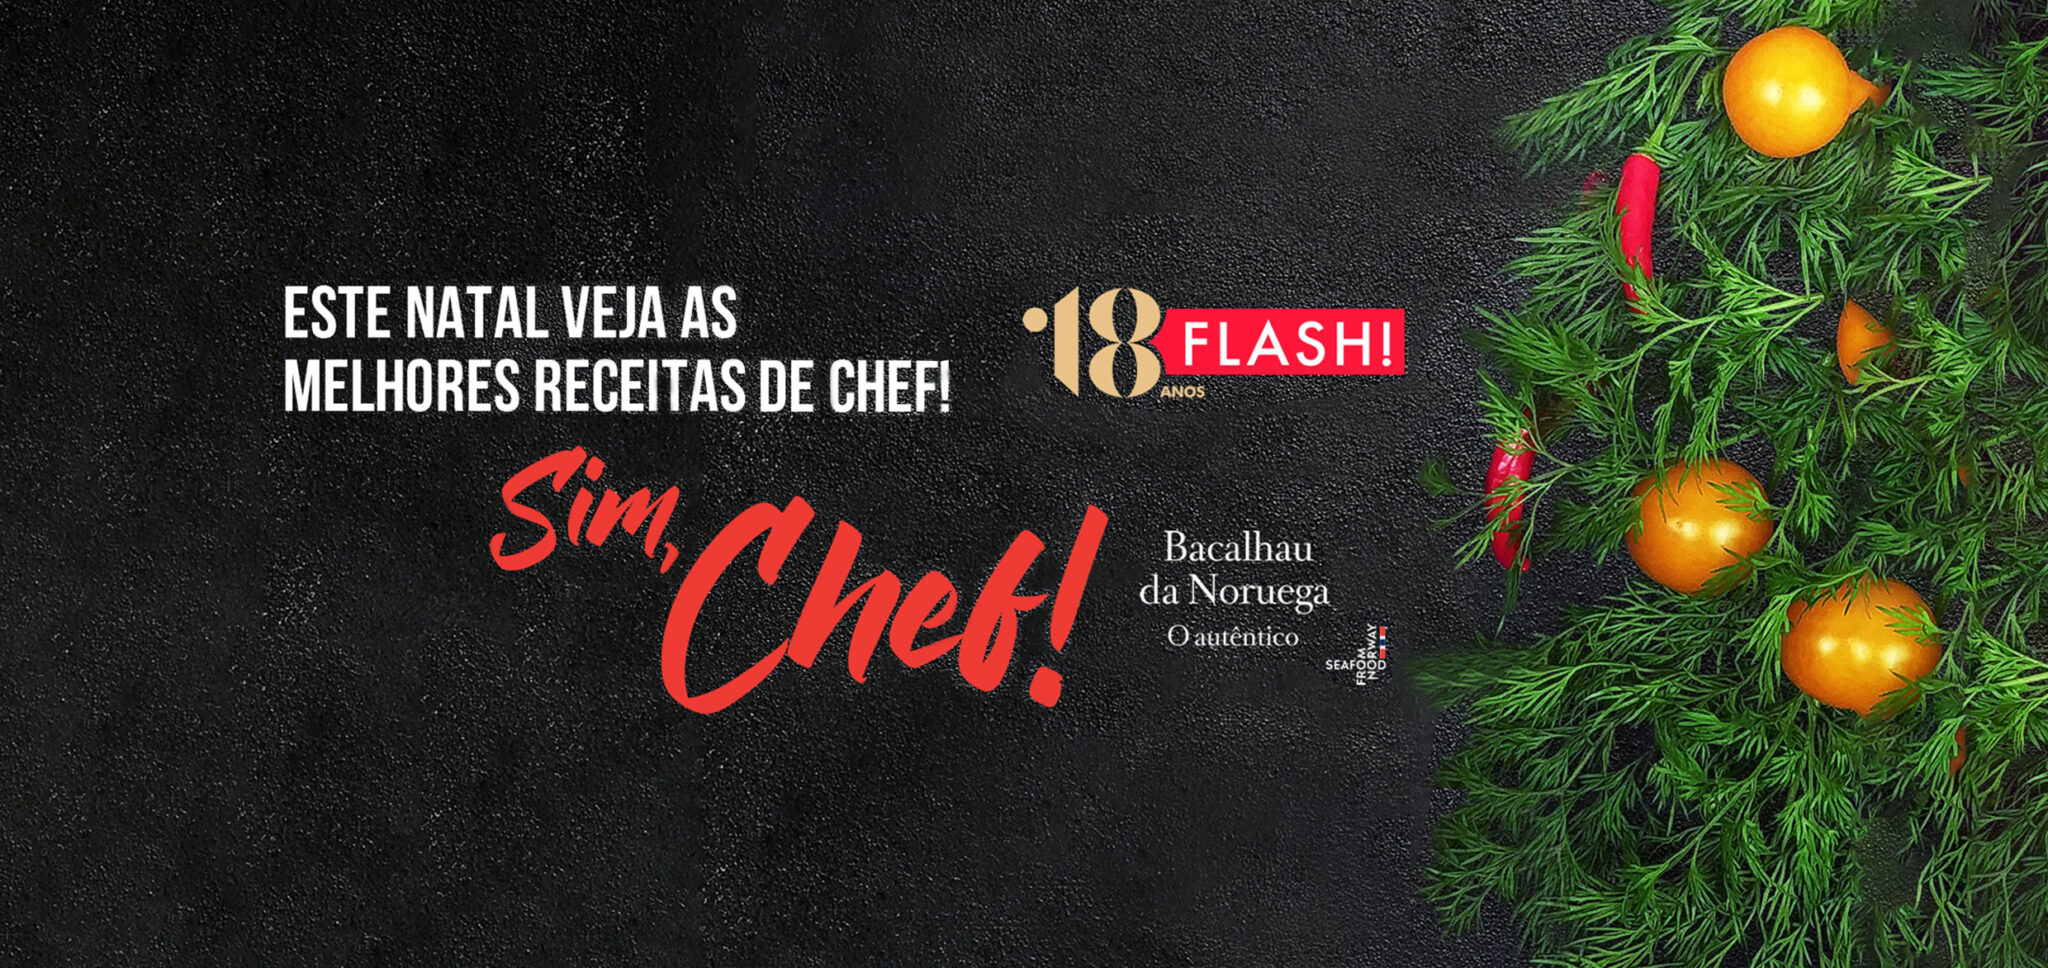 sim-chef-temporada-3-estreia-na-flash-com-o-bacalhau-da-noruega